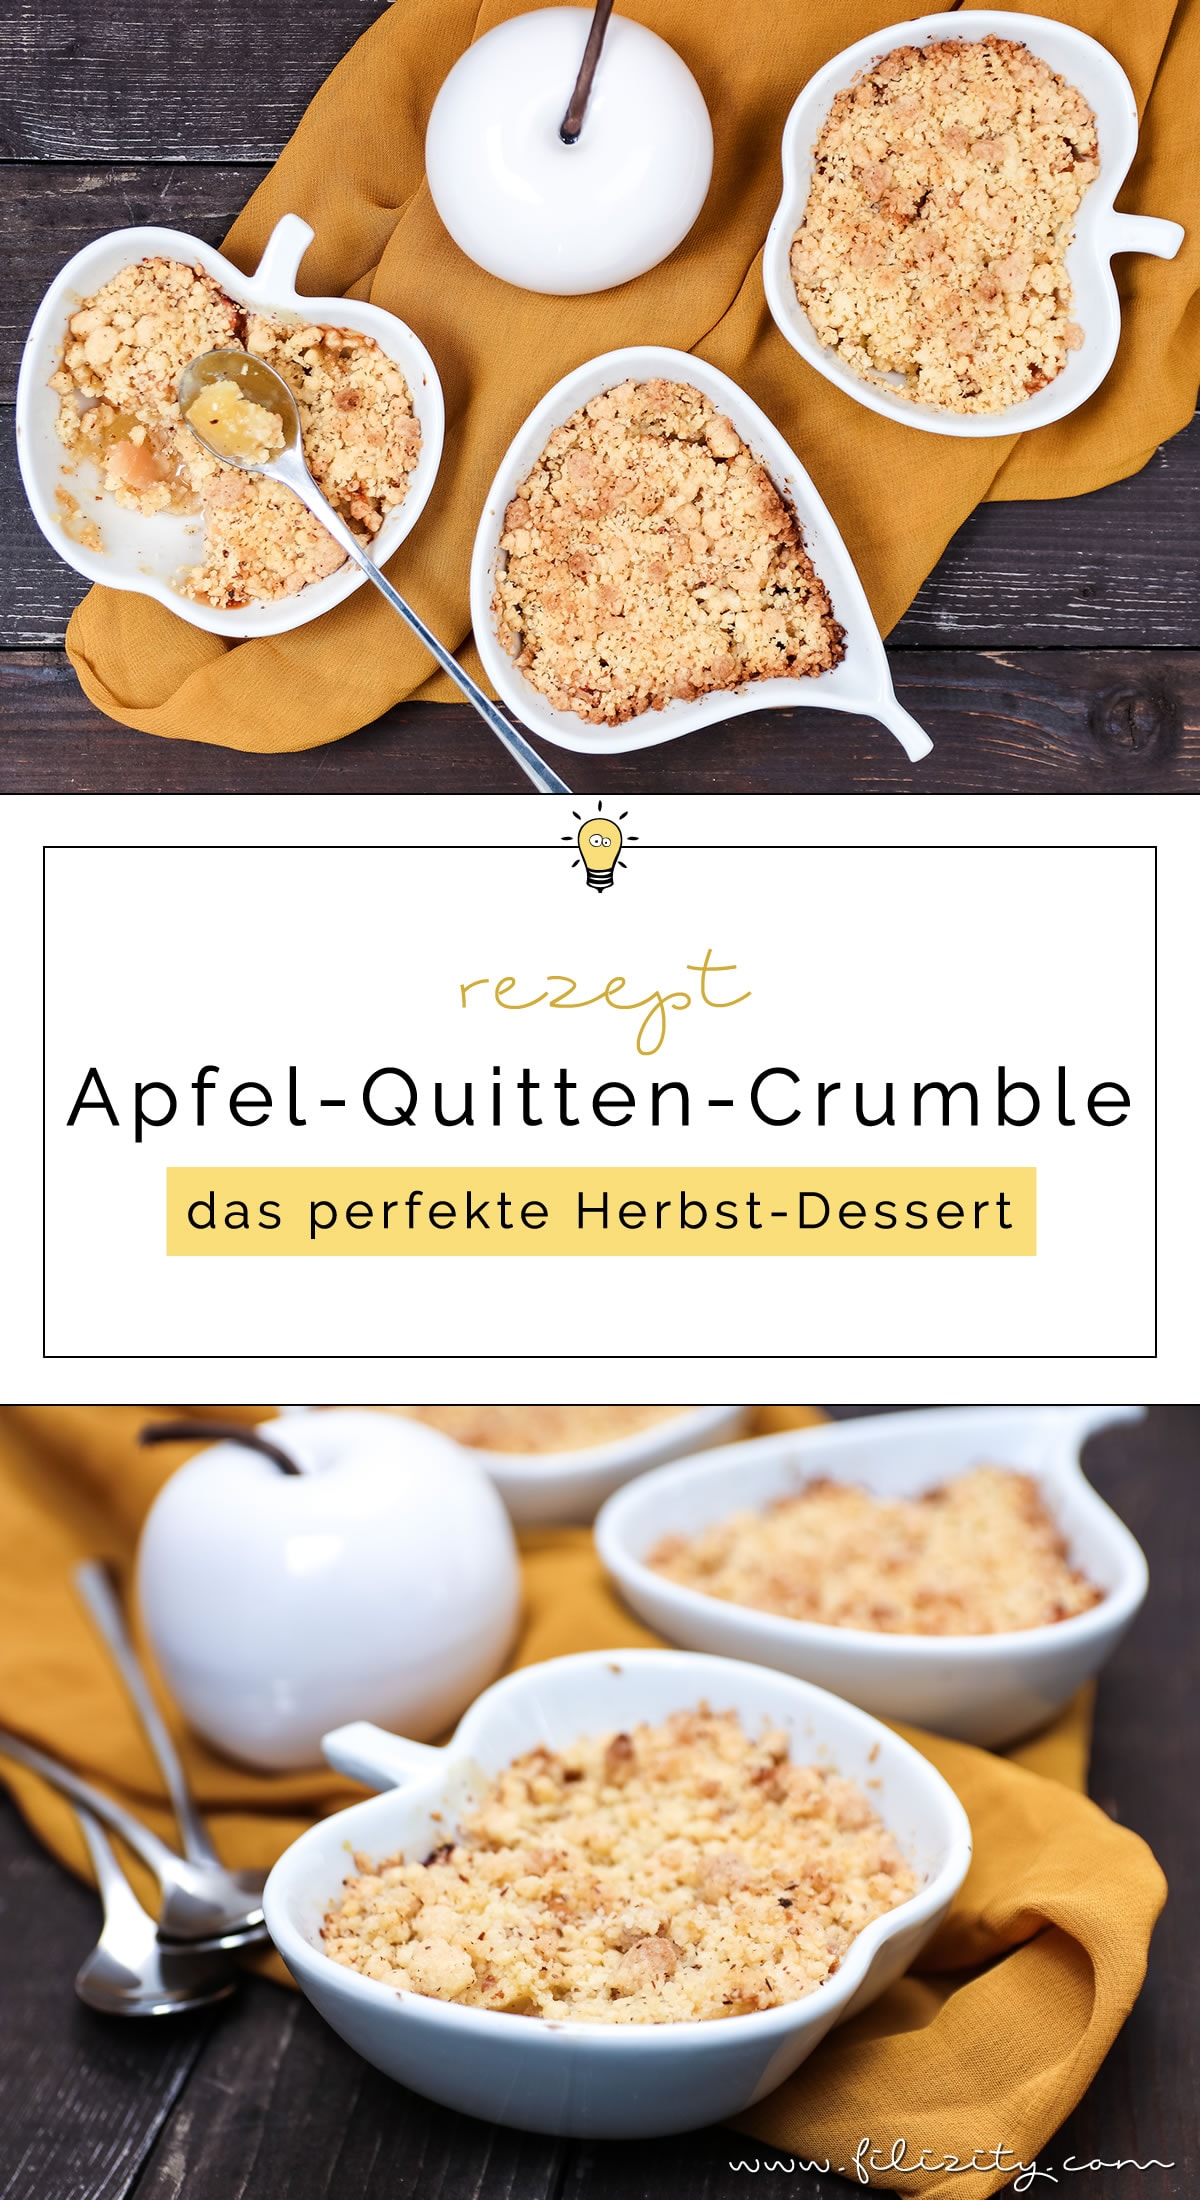 Rezept: Apfel-Quitten-Crumble - Das perfekte Herbst-Dessert | Filizity.com | Food-Blog aus Koblenz